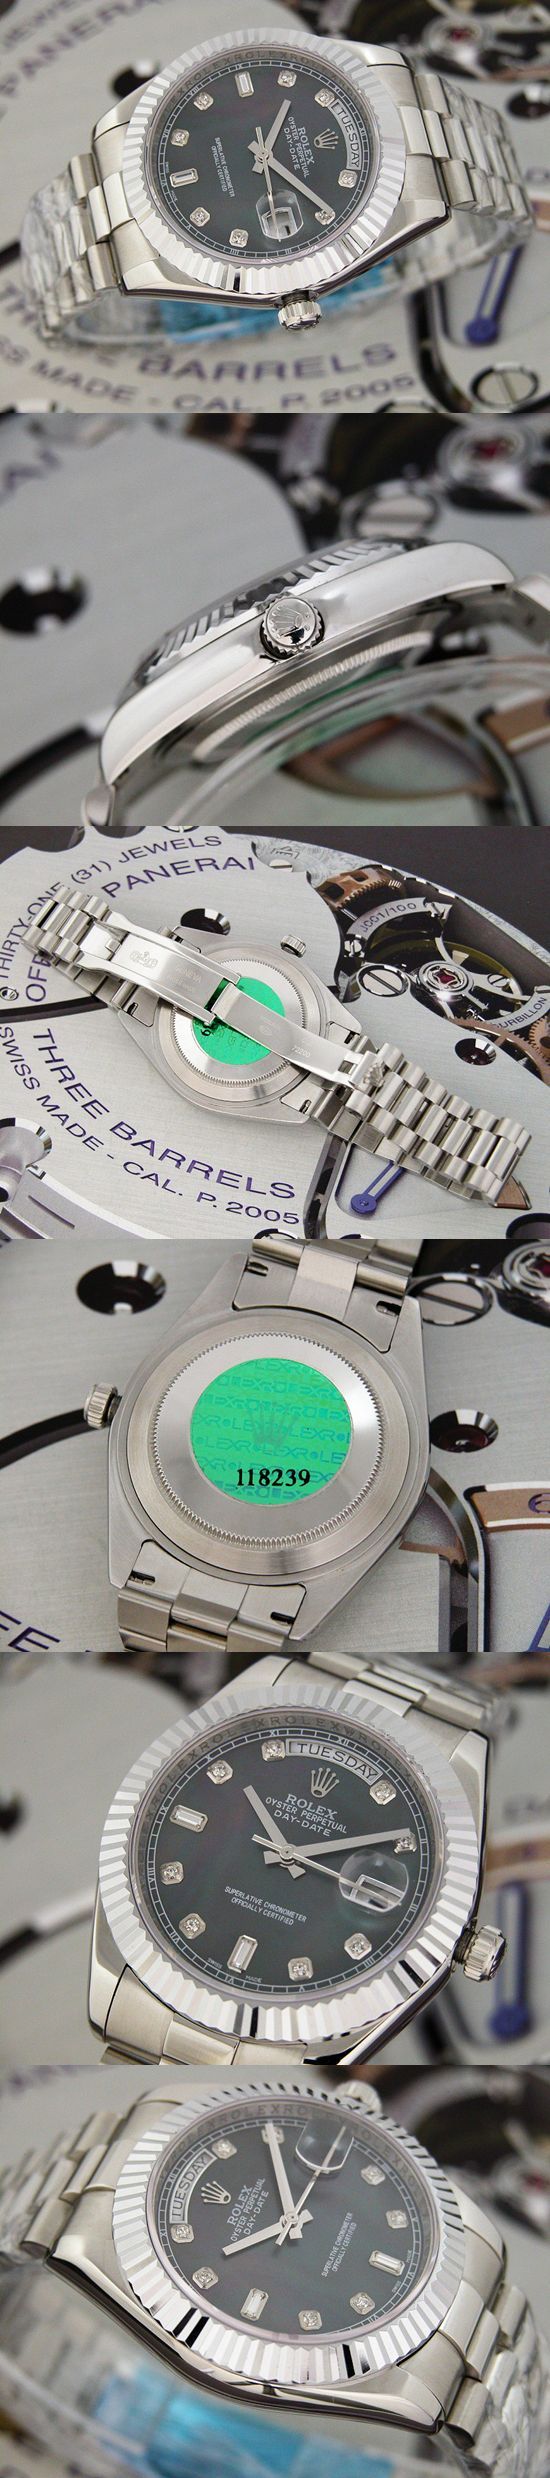 おしゃれなブランド時計がロレックス-デイデイト-ROLEX-118239-98-男性用を提供します.